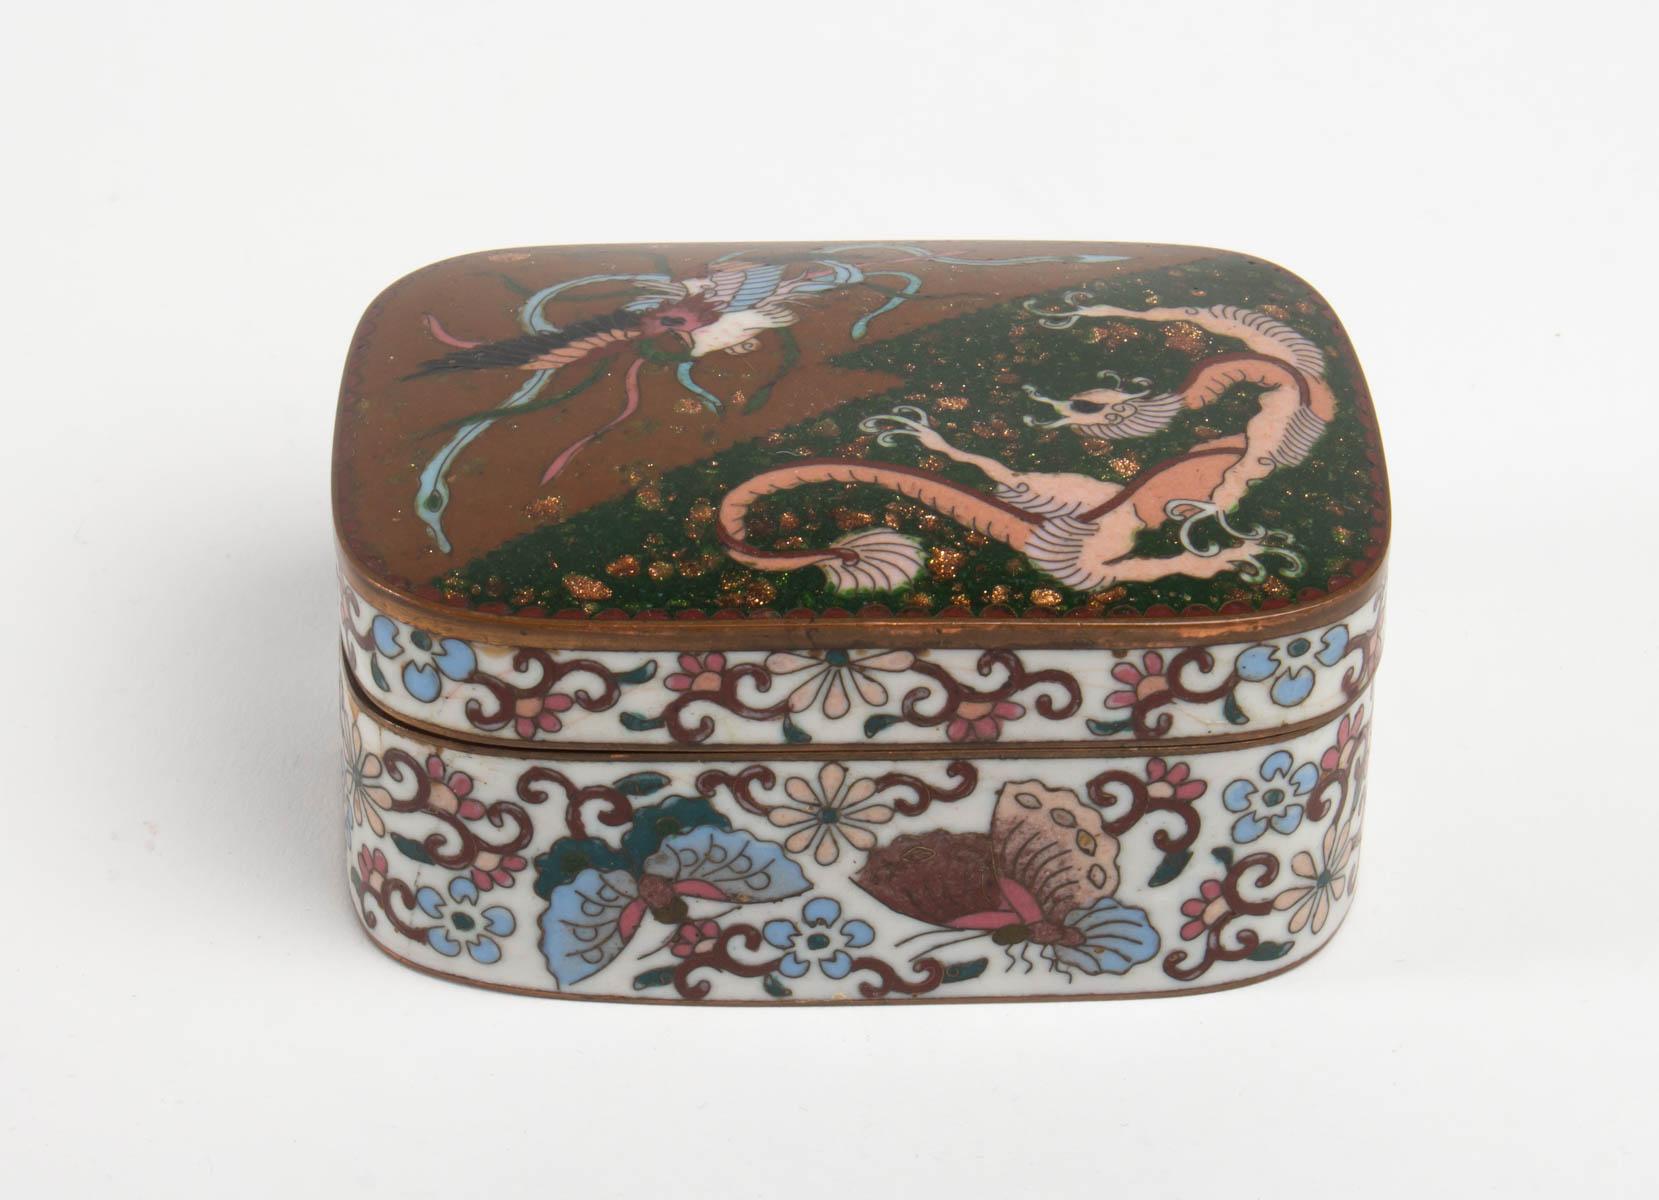 Box enamels Cloisonné on copper decor dragon and phoenix, Japan, circa 1880, Meiji period
Measures: H 4.5cm, W 8cm, W 11cm.